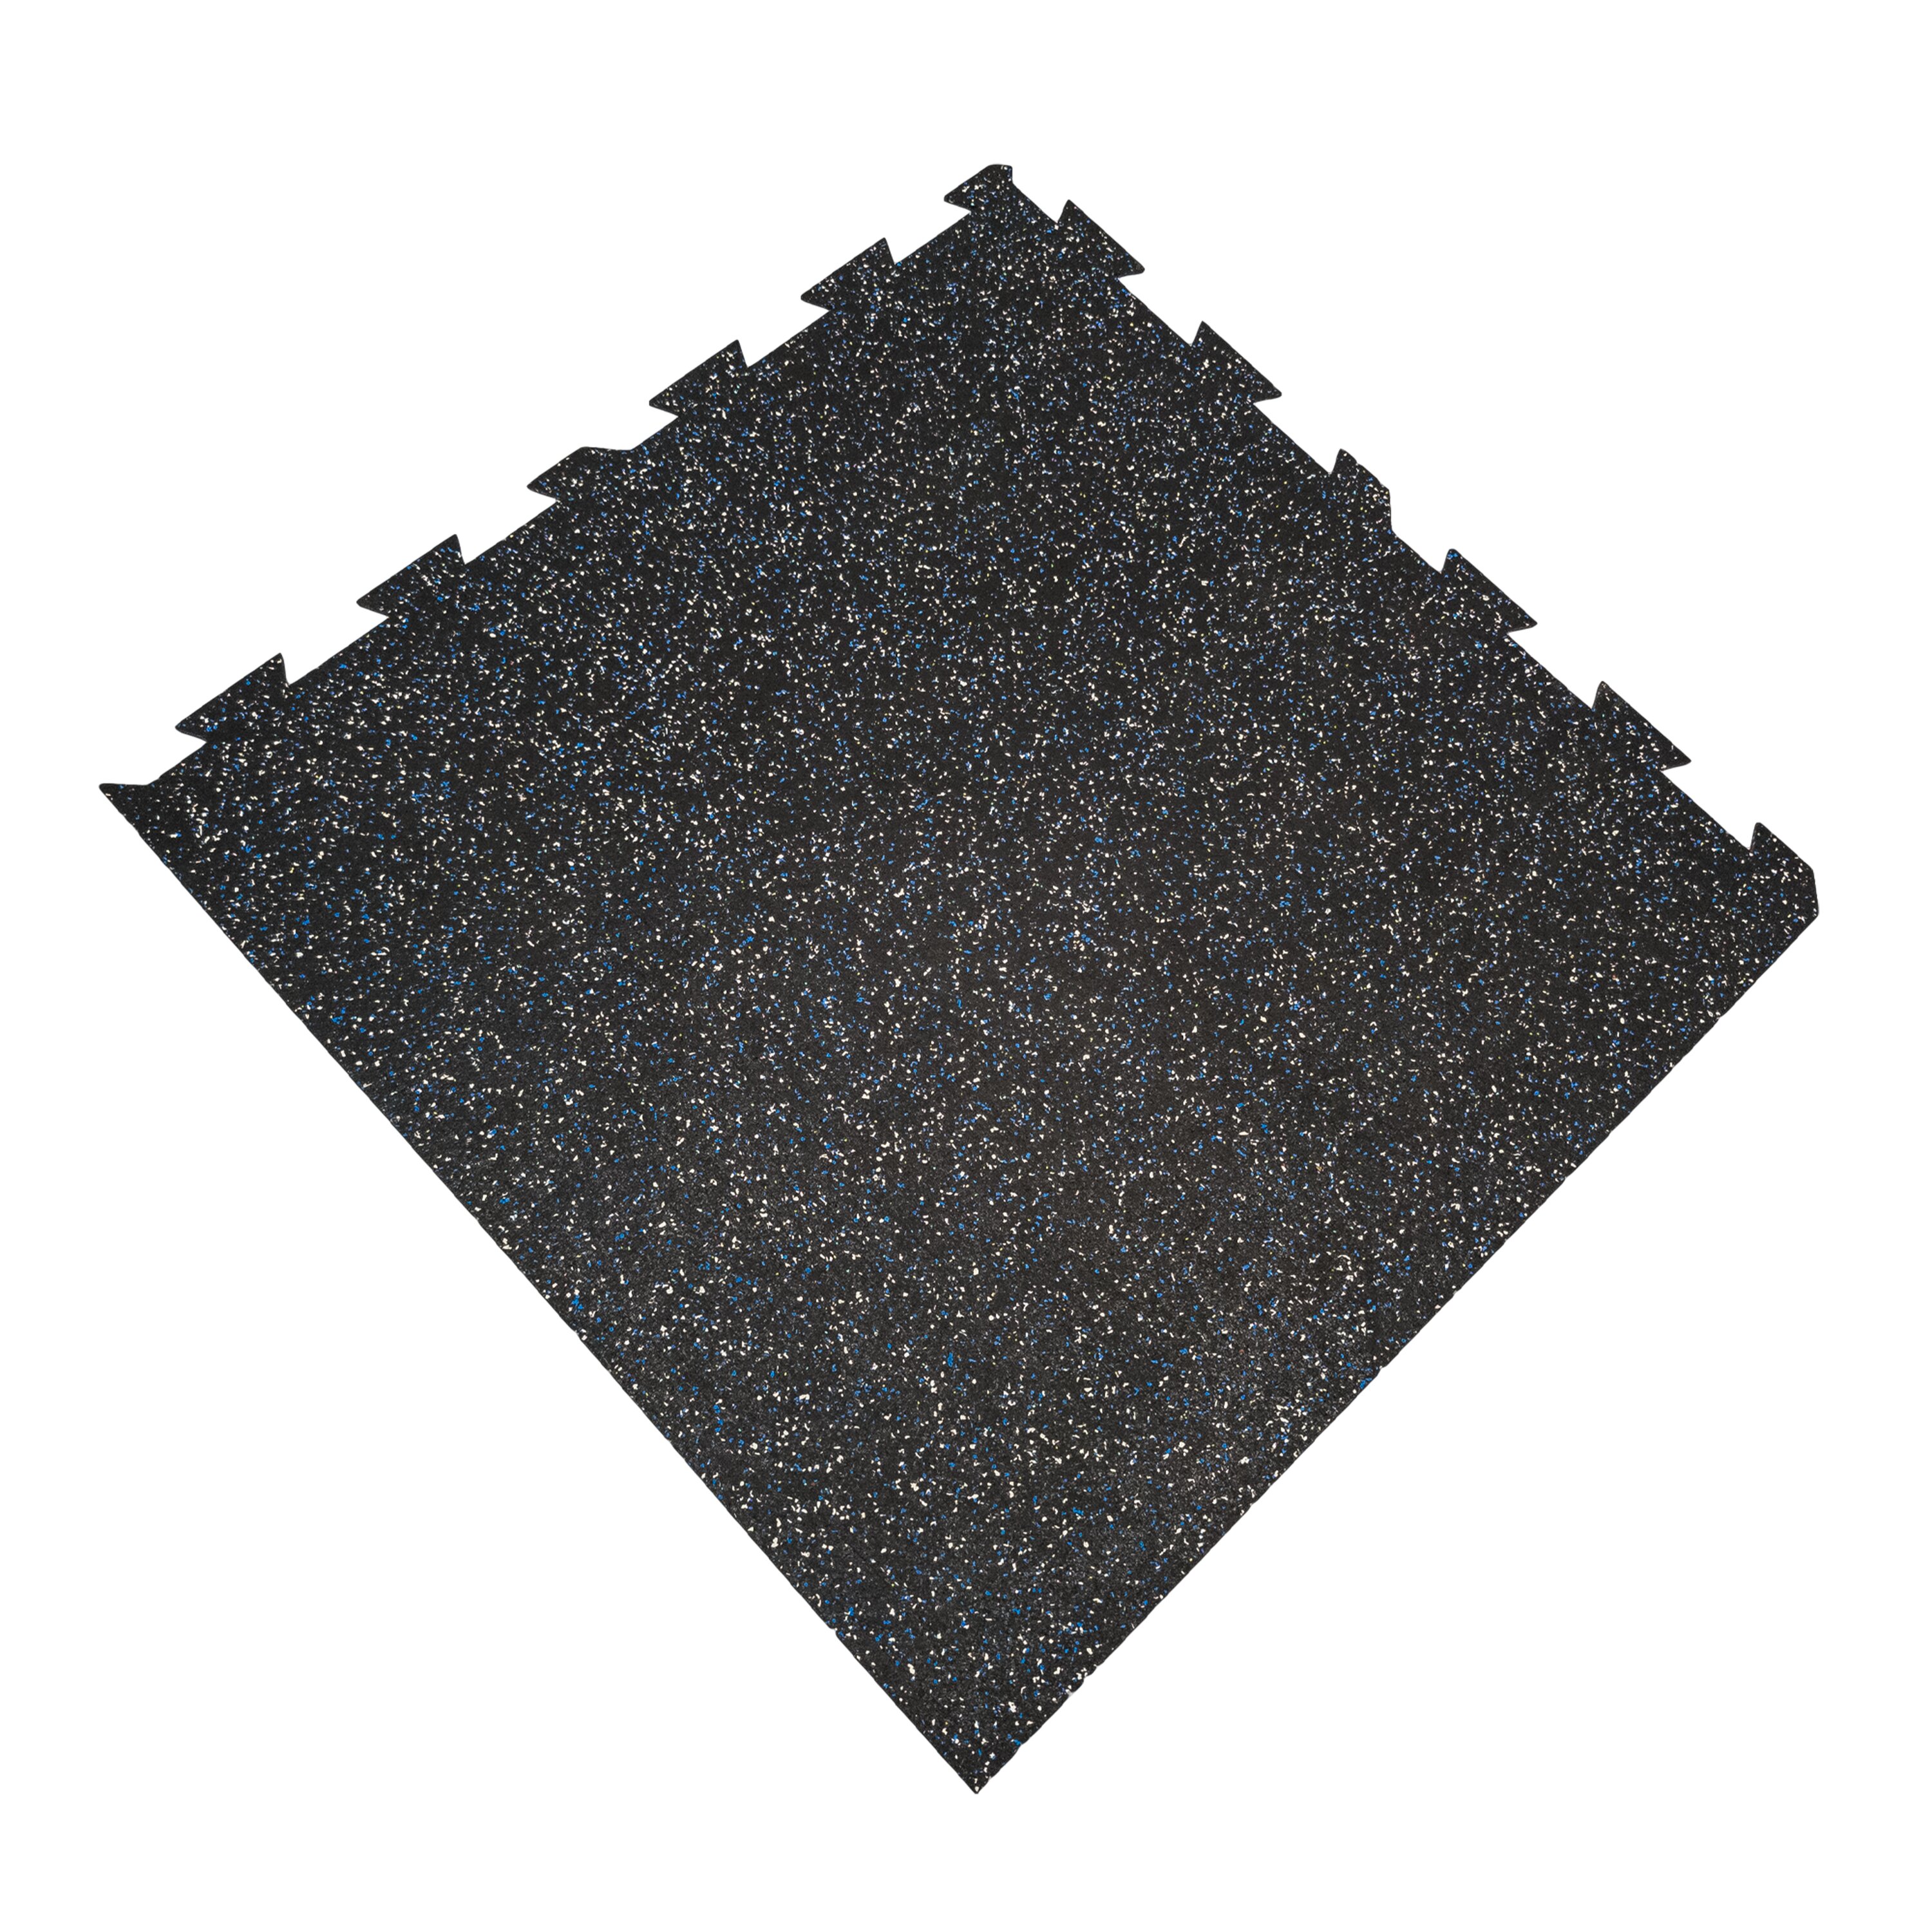 Černo-bílo-modrá podlahová guma FLOMA FitFlo SF1050 - délka 100 cm, šířka 100 cm, výška 1,6 cm